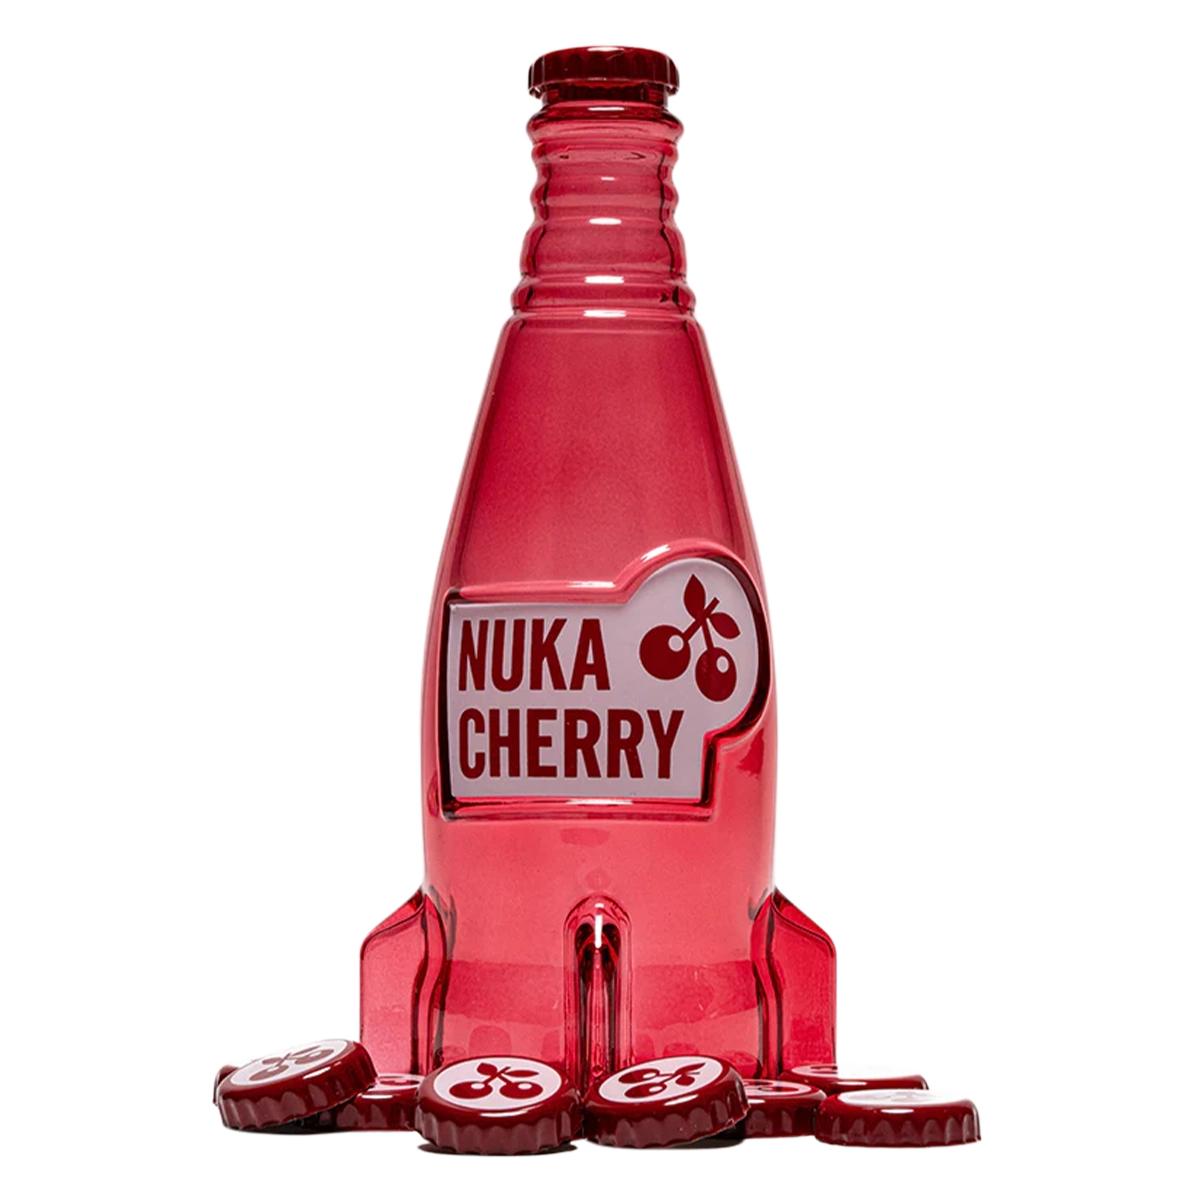 Fallout "Nuka Cola Cherry" Glasflasche und Kronkorken